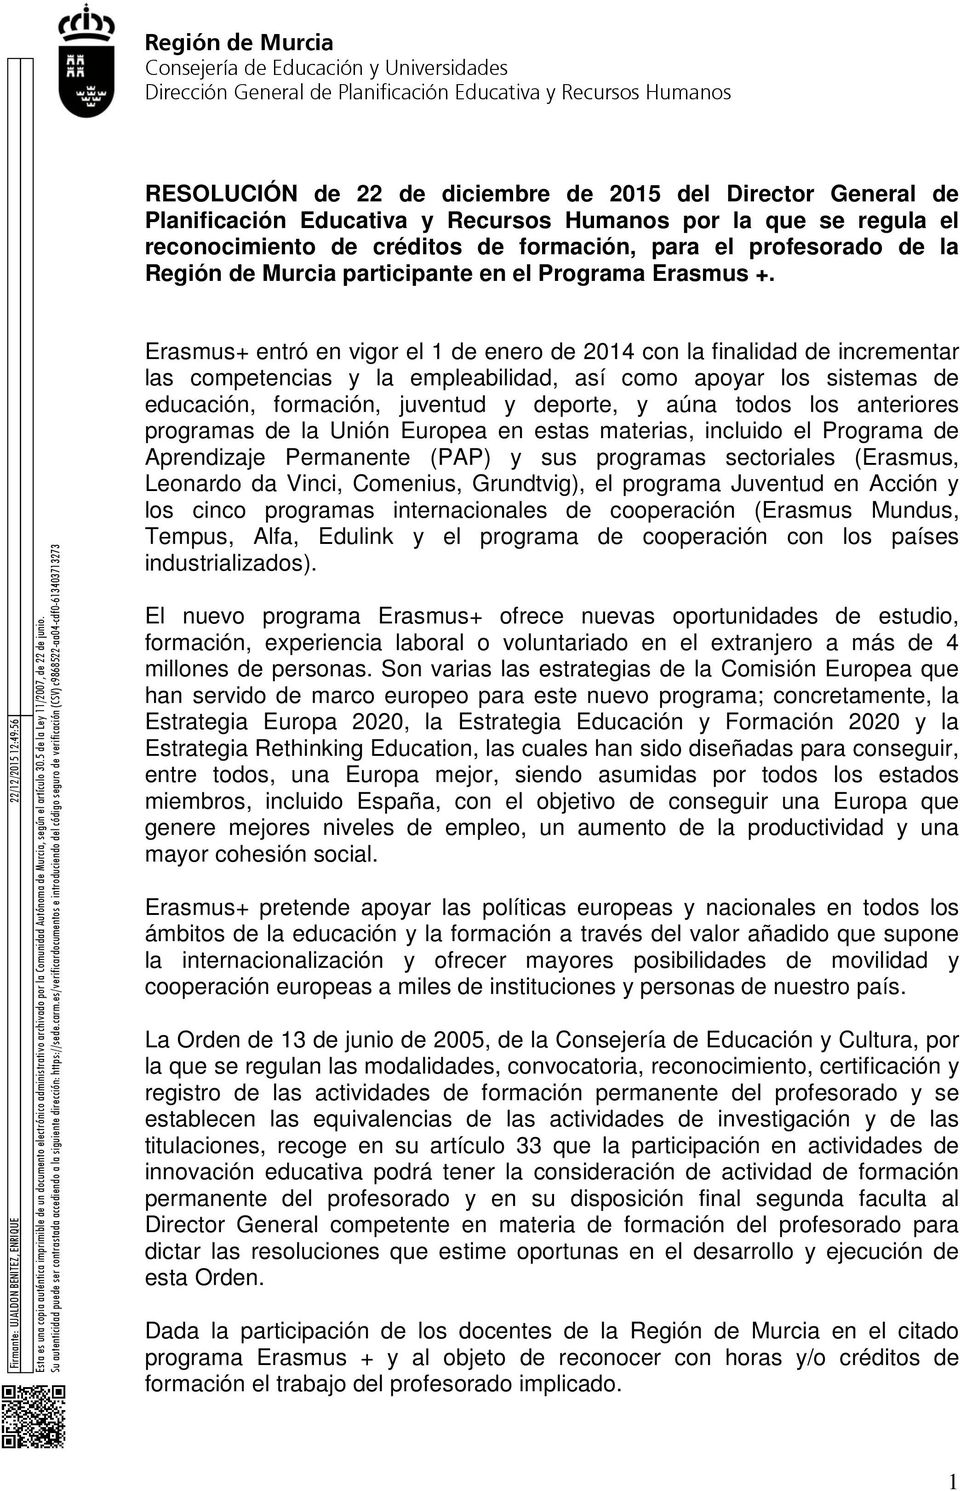 Esta es una cpia auténtica imprimible de un dcument electrónic administrativ archivad pr la Cmunidad Autónma de Murcia, según el artícul 30.5 de la Ley 11/2007, de 22 de juni.